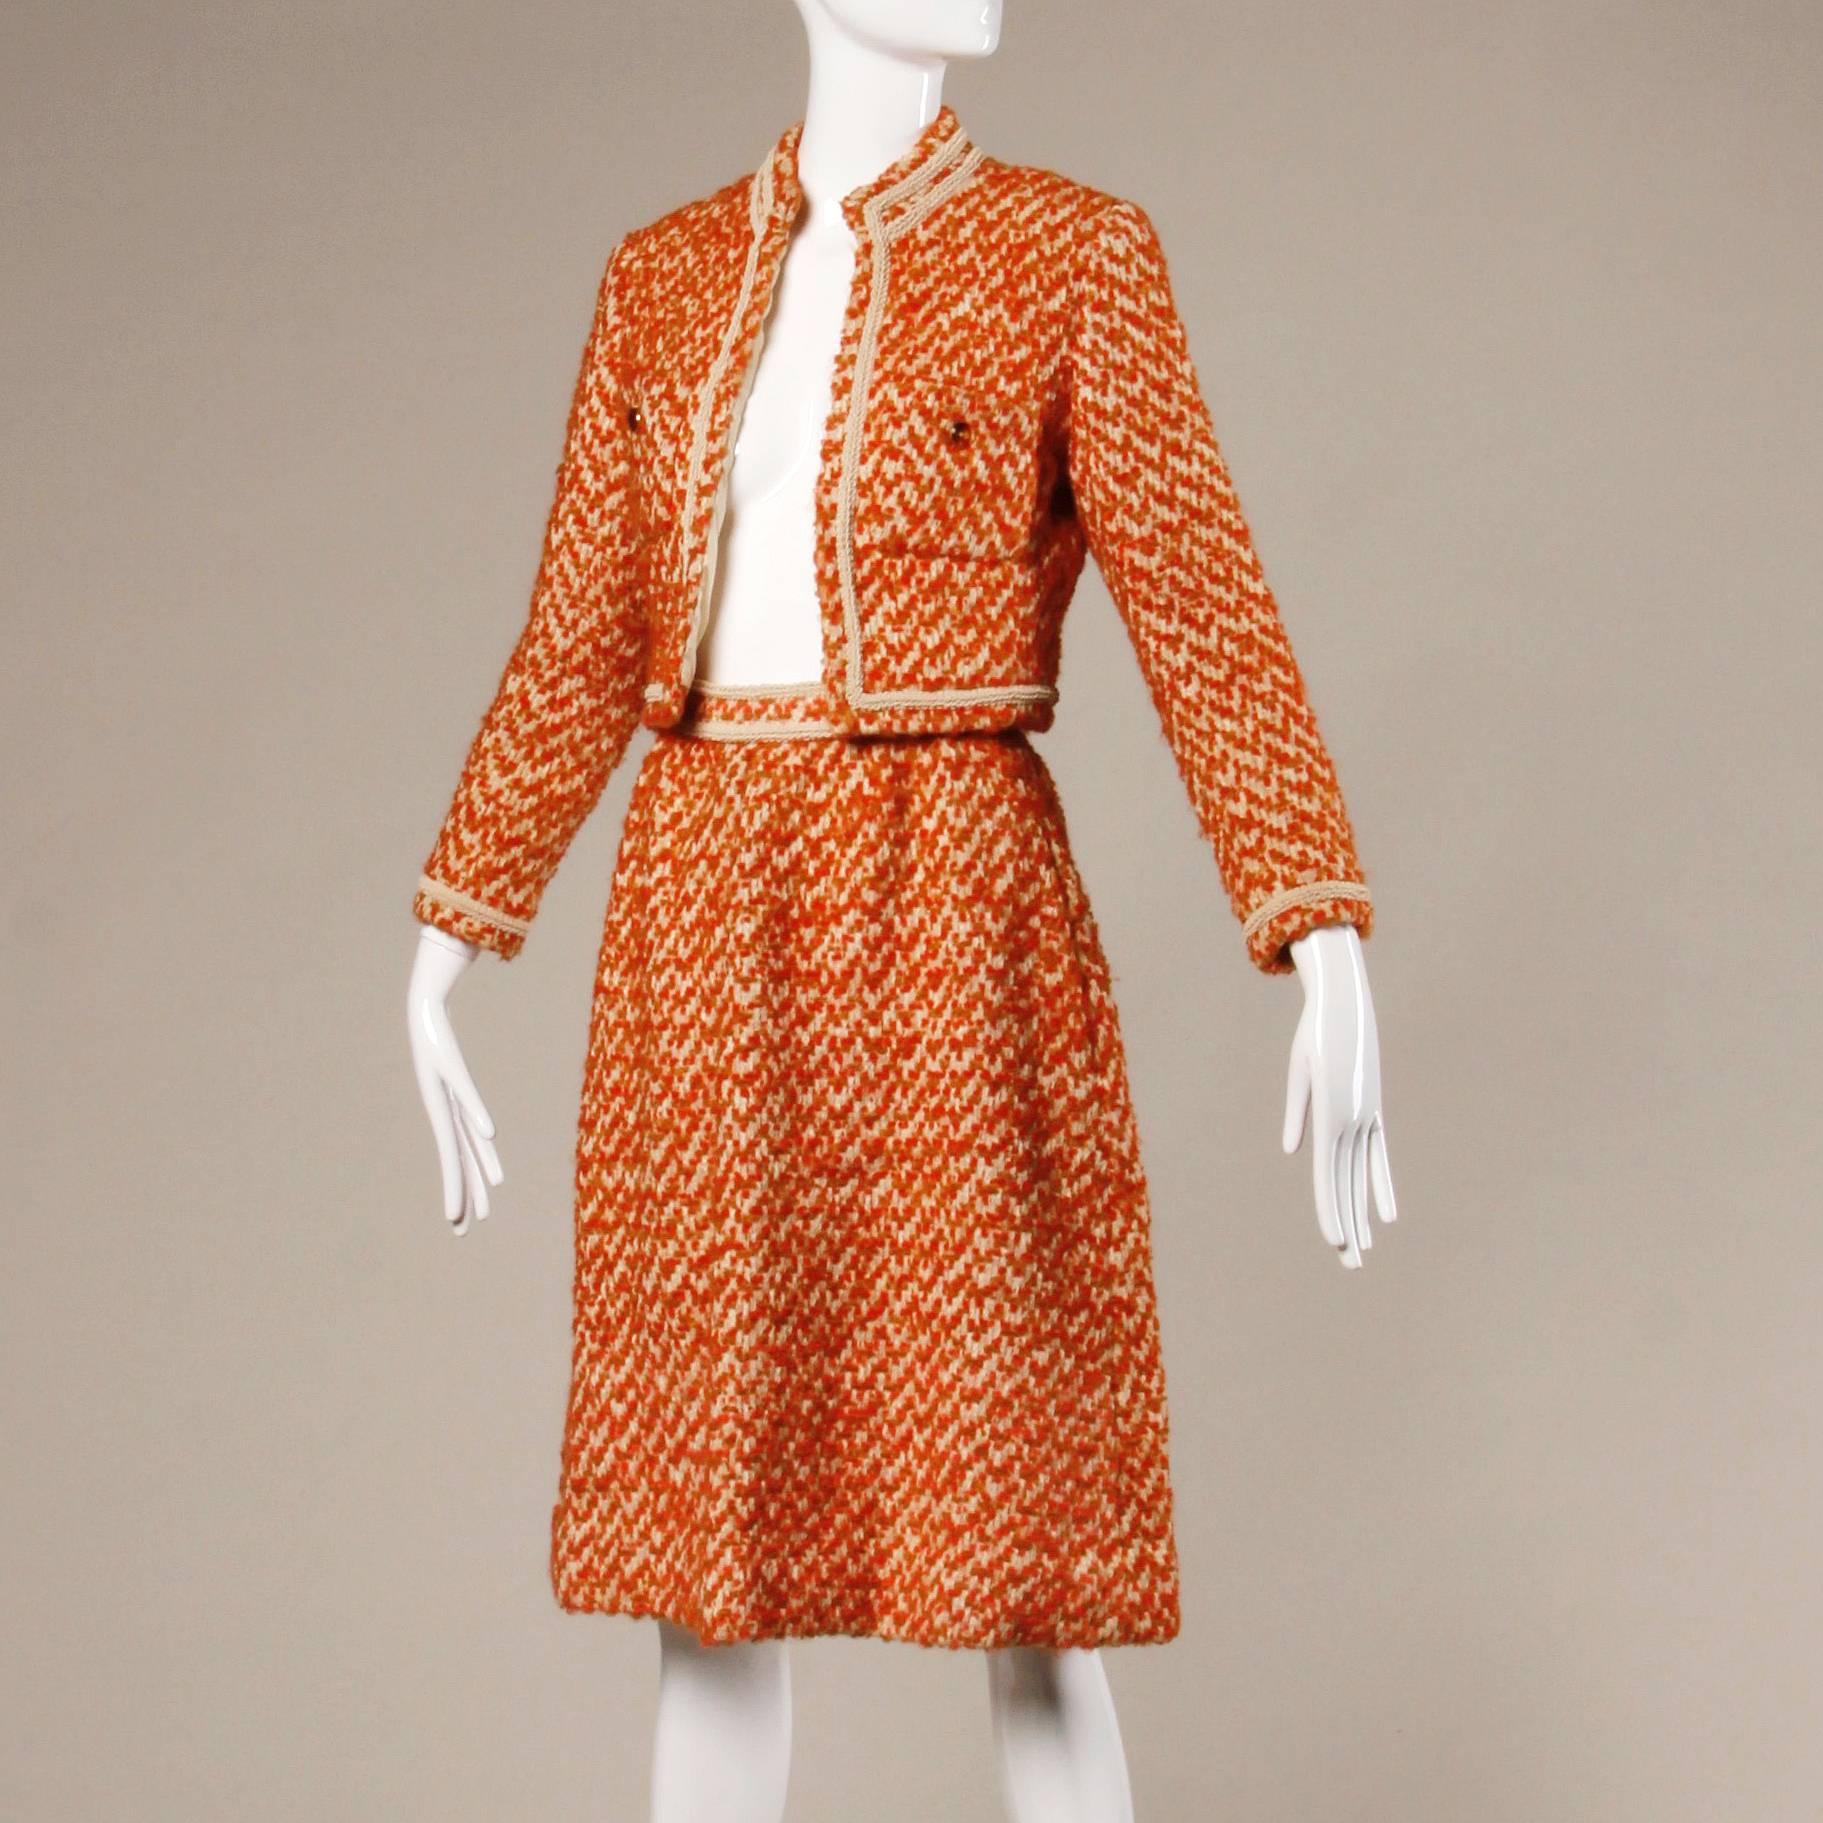 Superbe ensemble veste et jupe de couture vintage Nina Ricci des années 1960. Laine bouclée colorée avec doublure en soie crémeuse - chaque point est cousu à la main ! Superbe état et confection.

Détails :

Entièrement doublé en soie
Poches